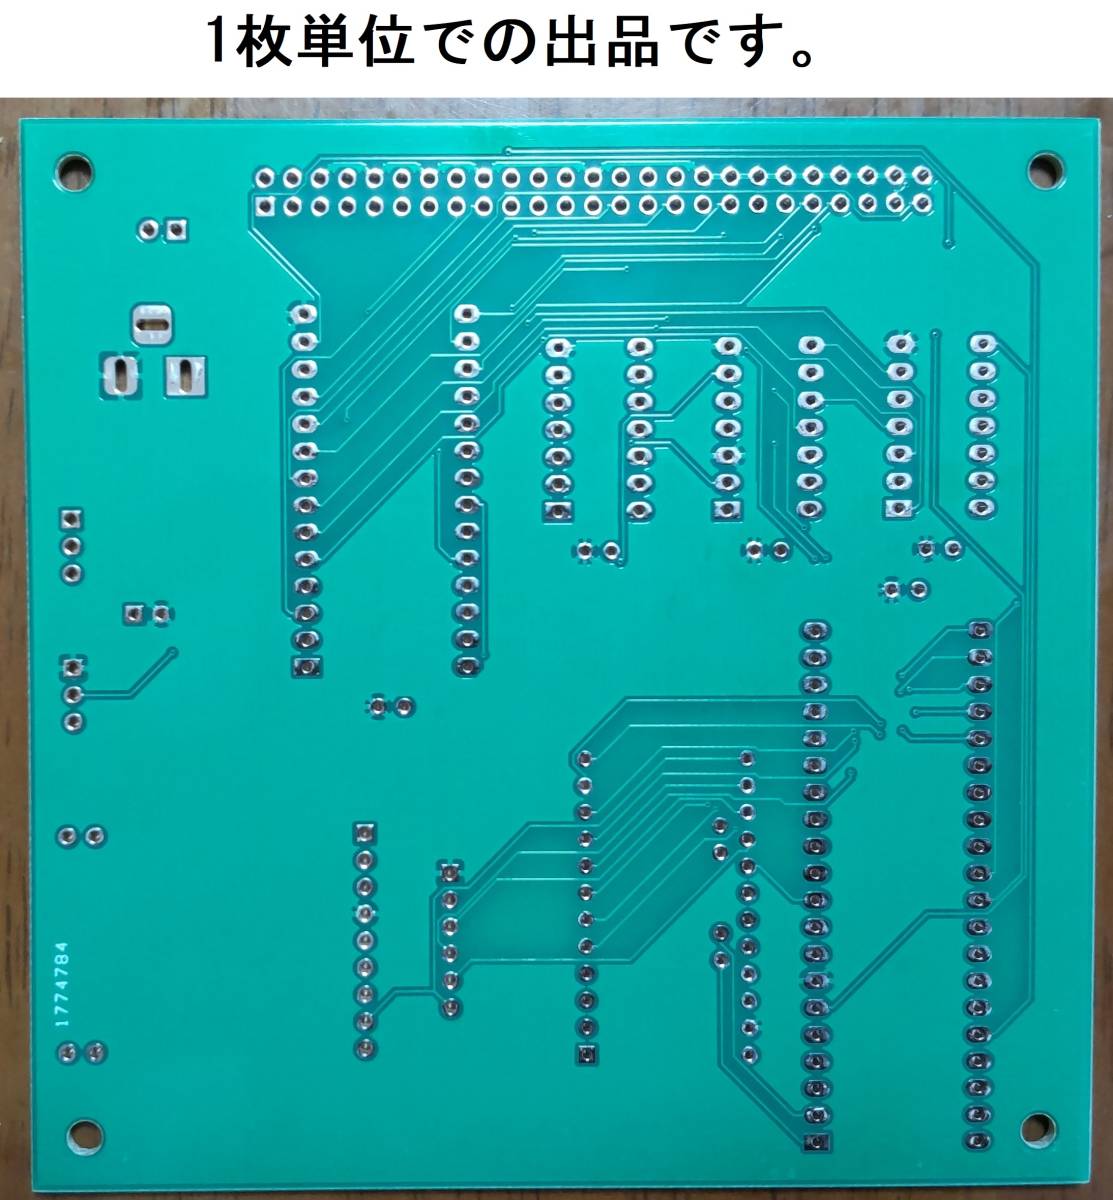 【自作基板】SHARP MZ-80シリーズ用MZ-80K SD-CARD UNIT Rev1.5.3 基板のみ【1枚単位での出品です】_画像2